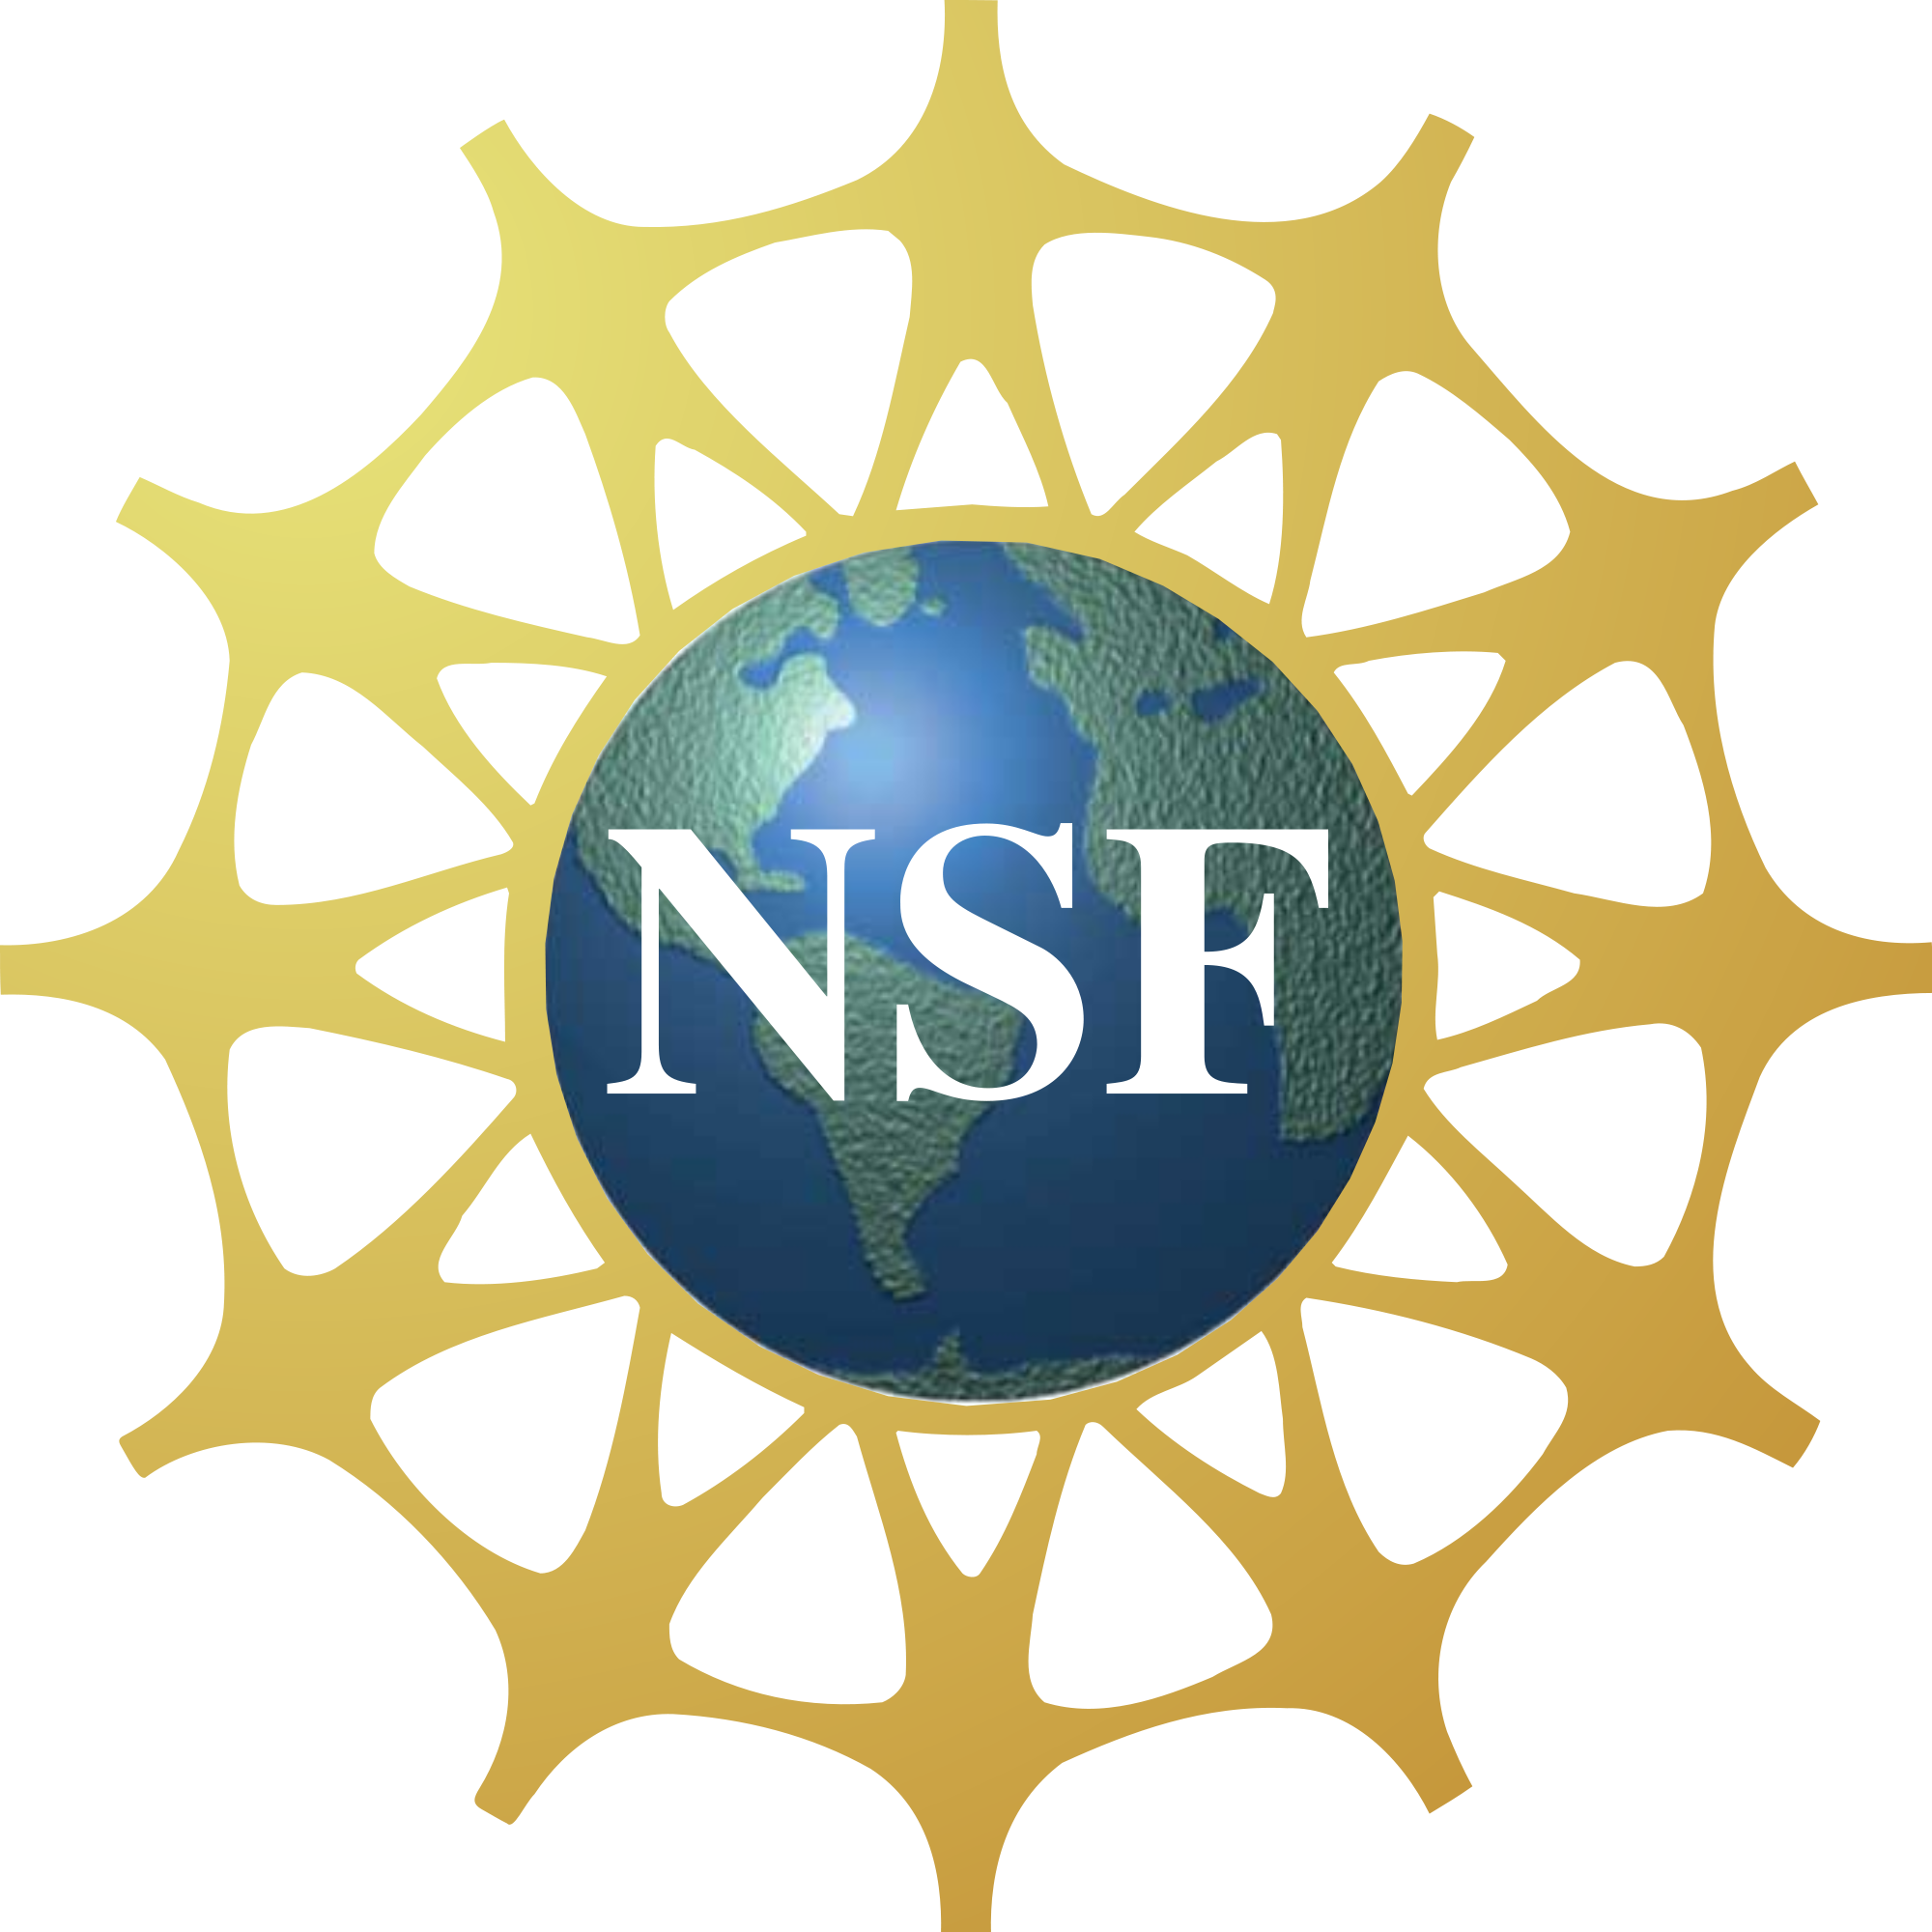 nsf_logo_main.